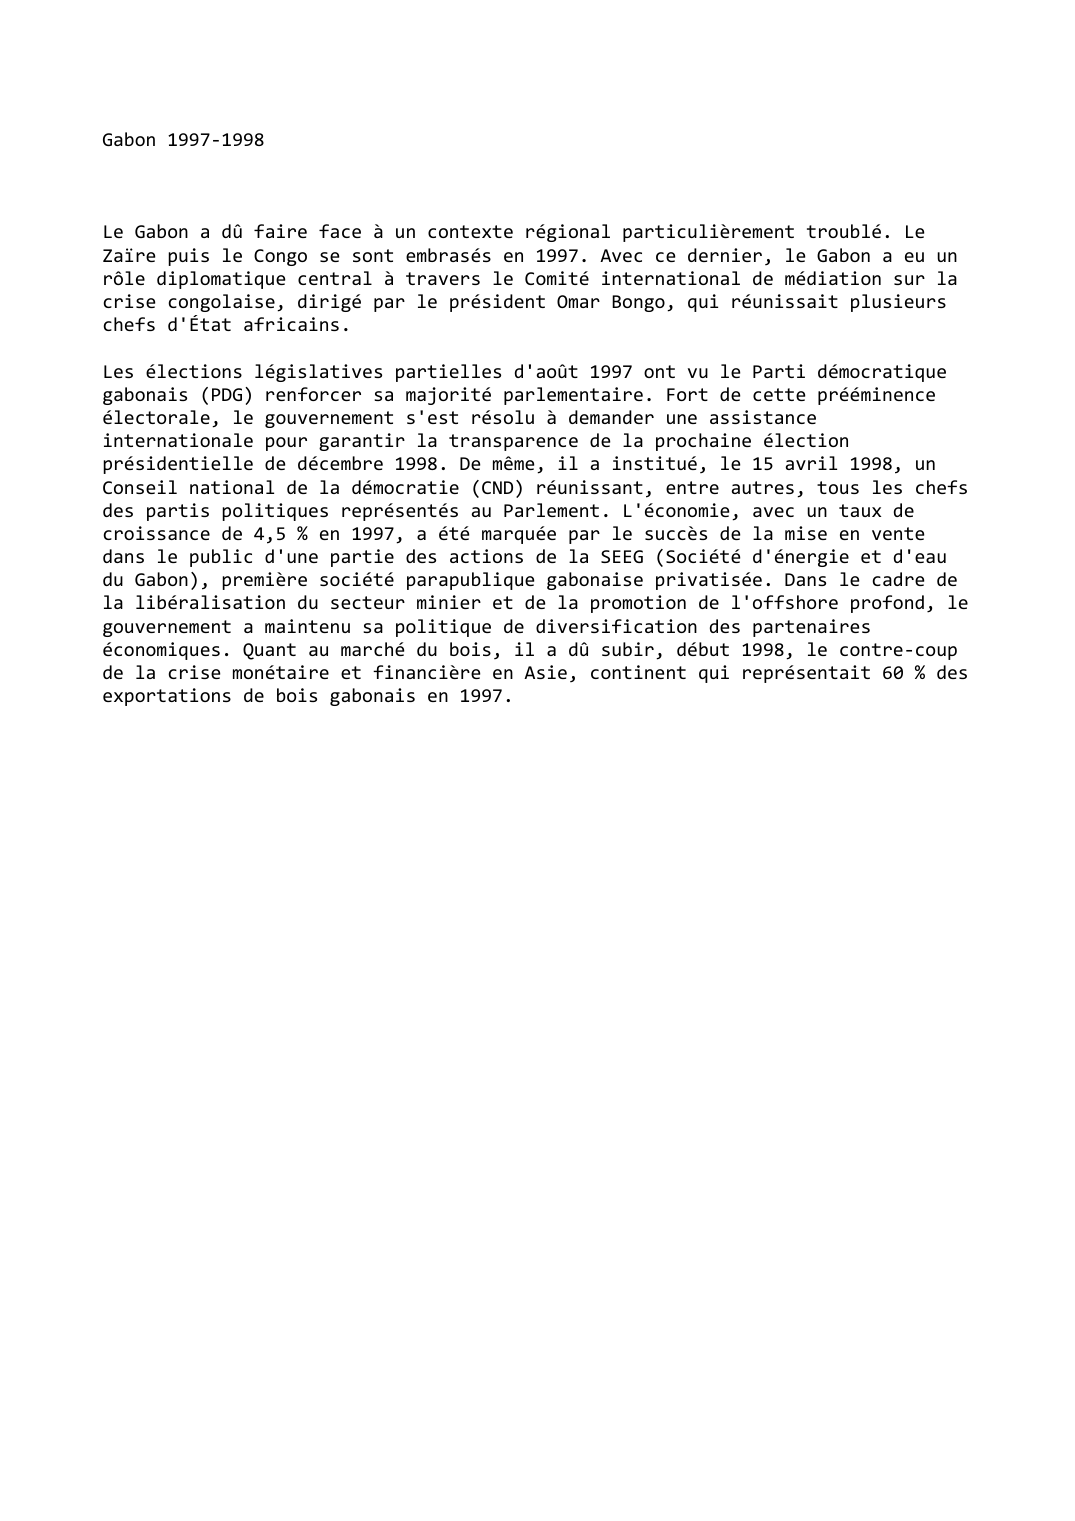 Prévisualisation du document Gabon (1997-1998)